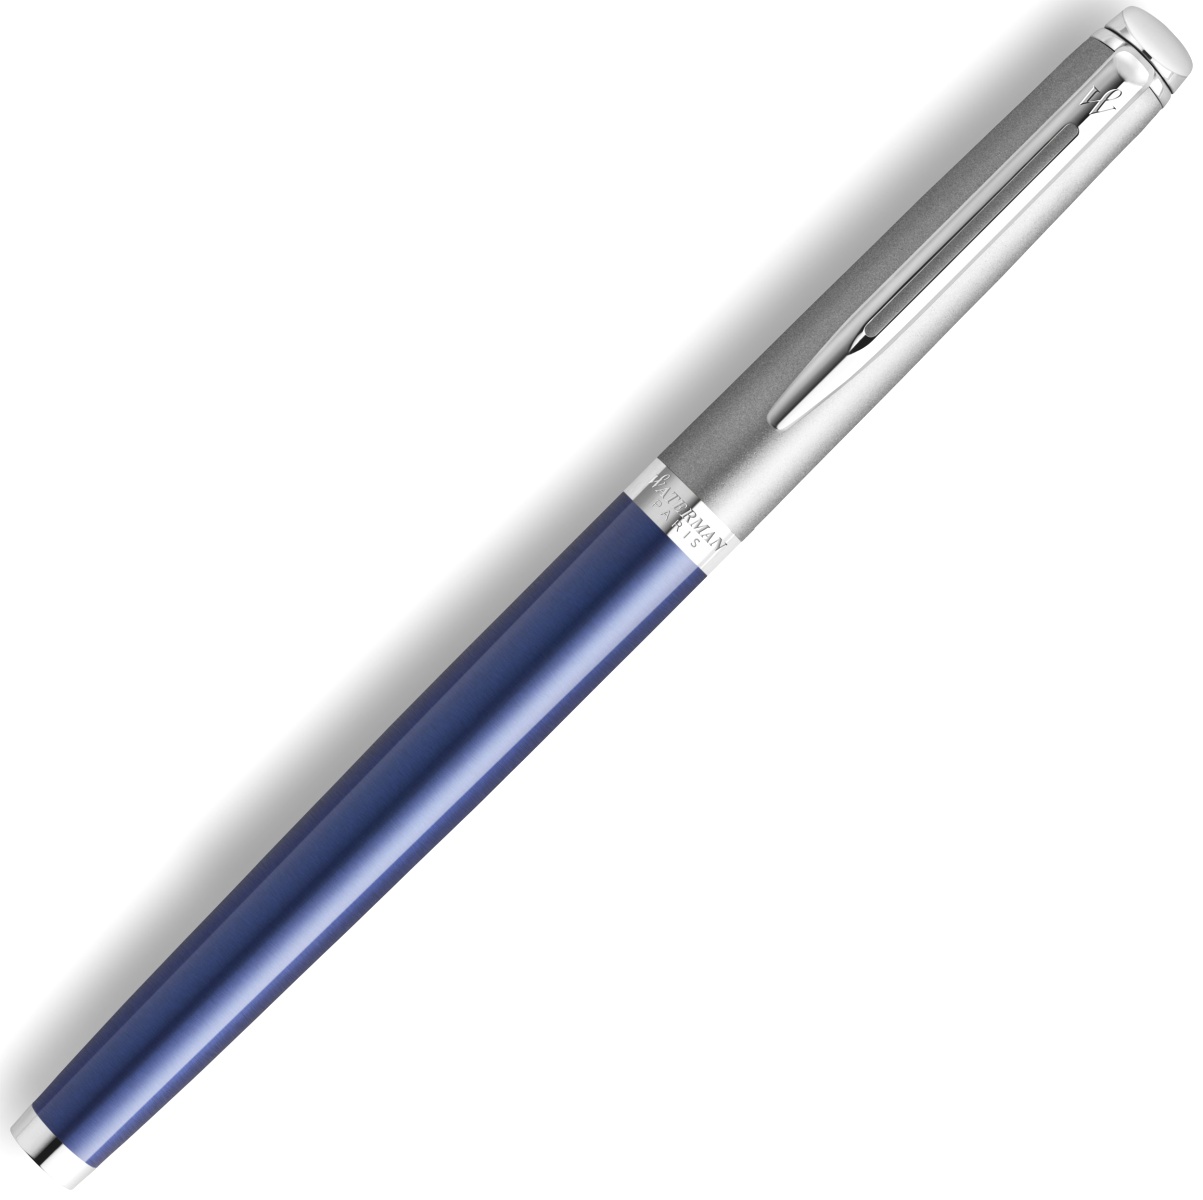  Ручка перьевая Waterman Hemisphere, Matte SS Blue CT (Перо F), фото 3